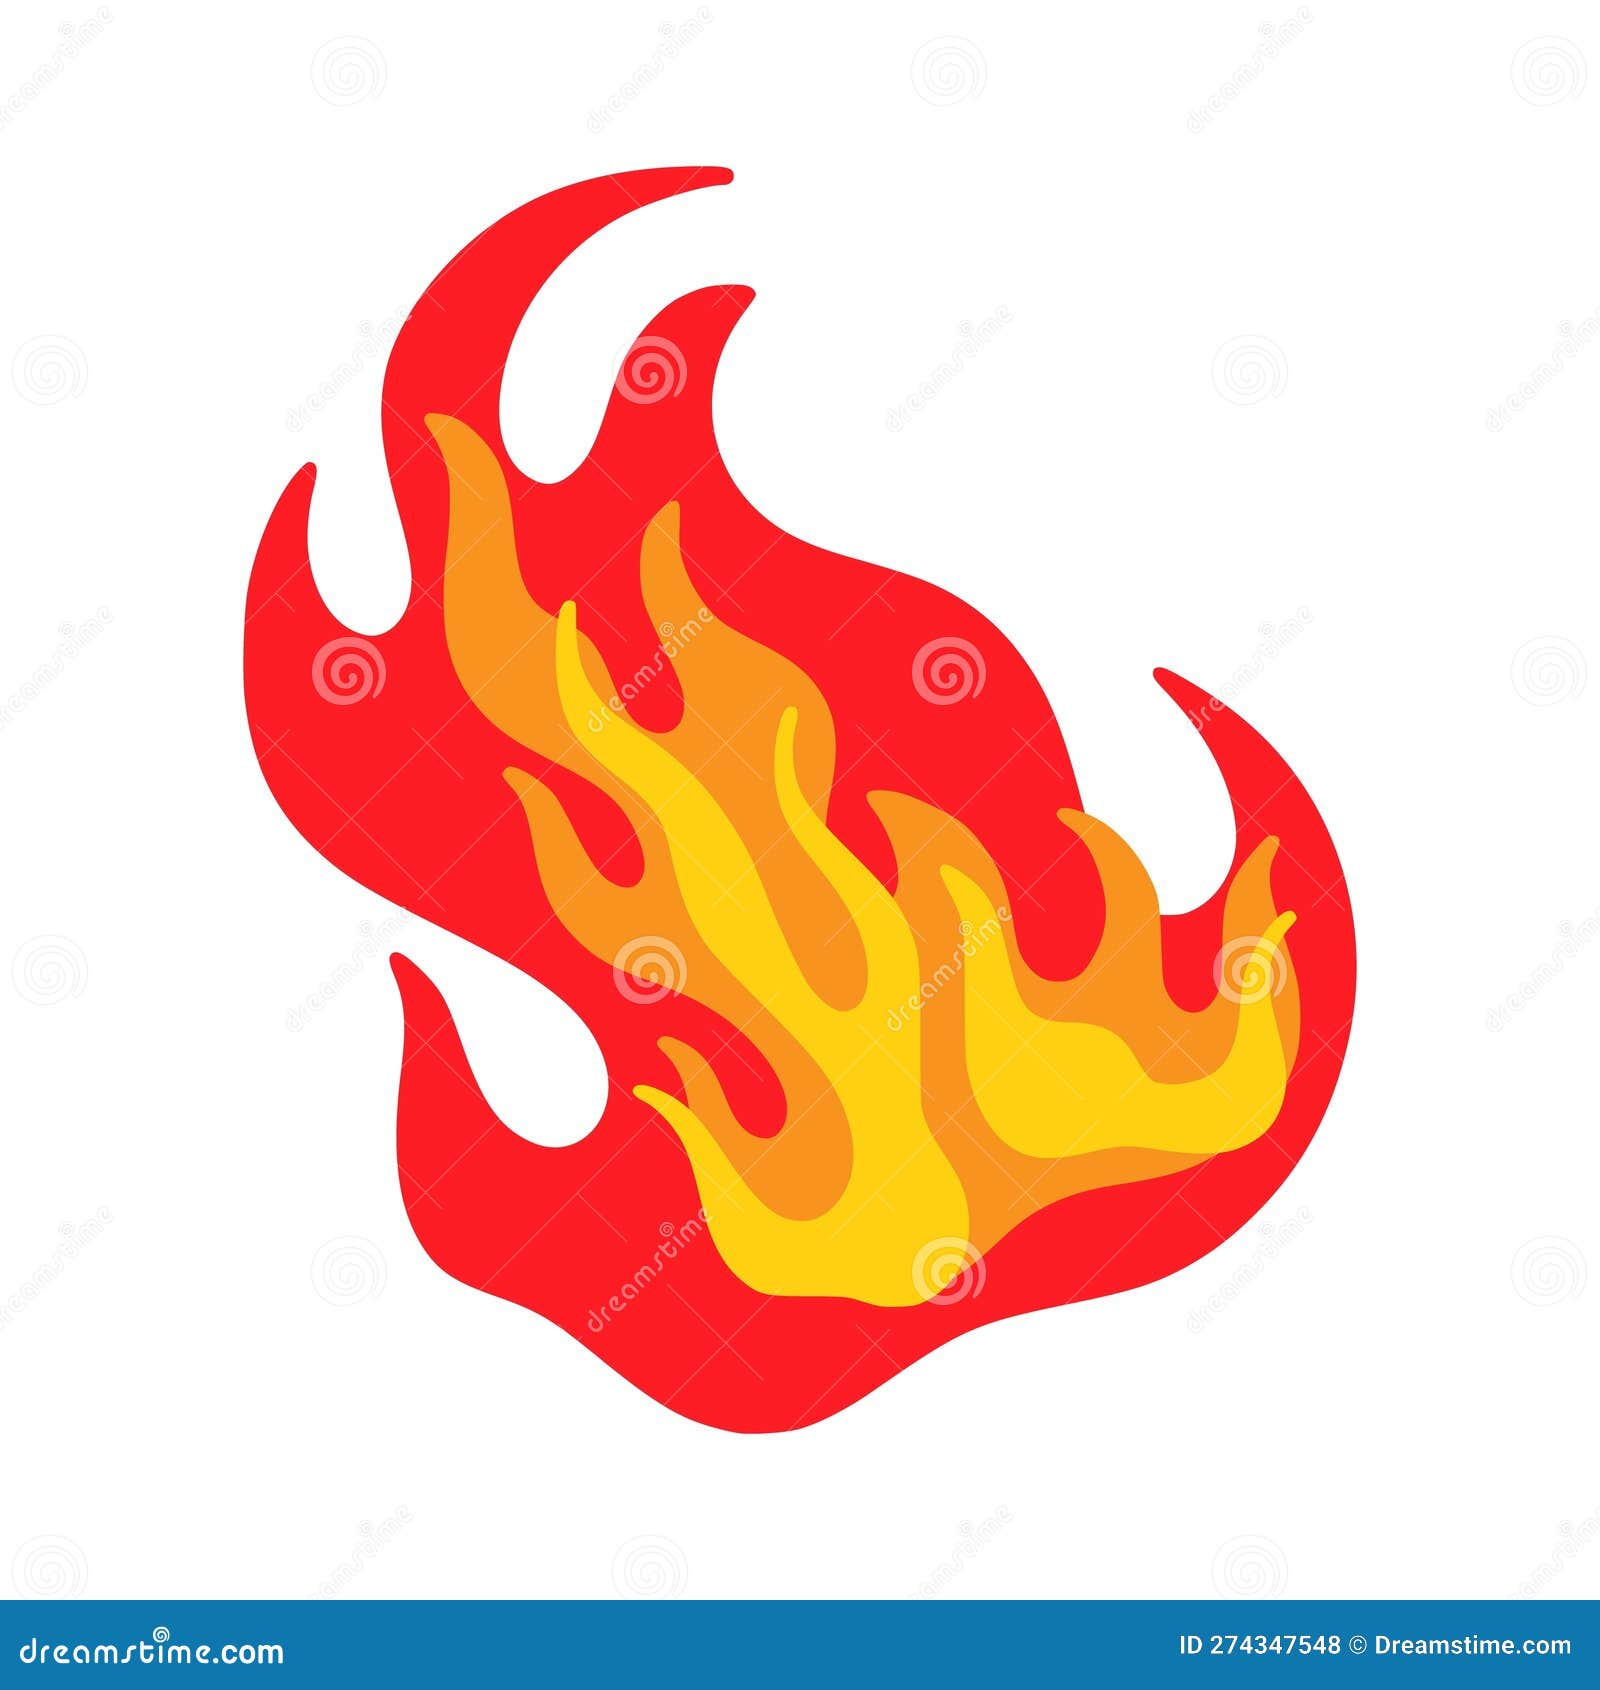 Desenho de chama de fogo queimar conceito de conjunto isolado quente  ilustração de elemento de design gráfico de desenho animado